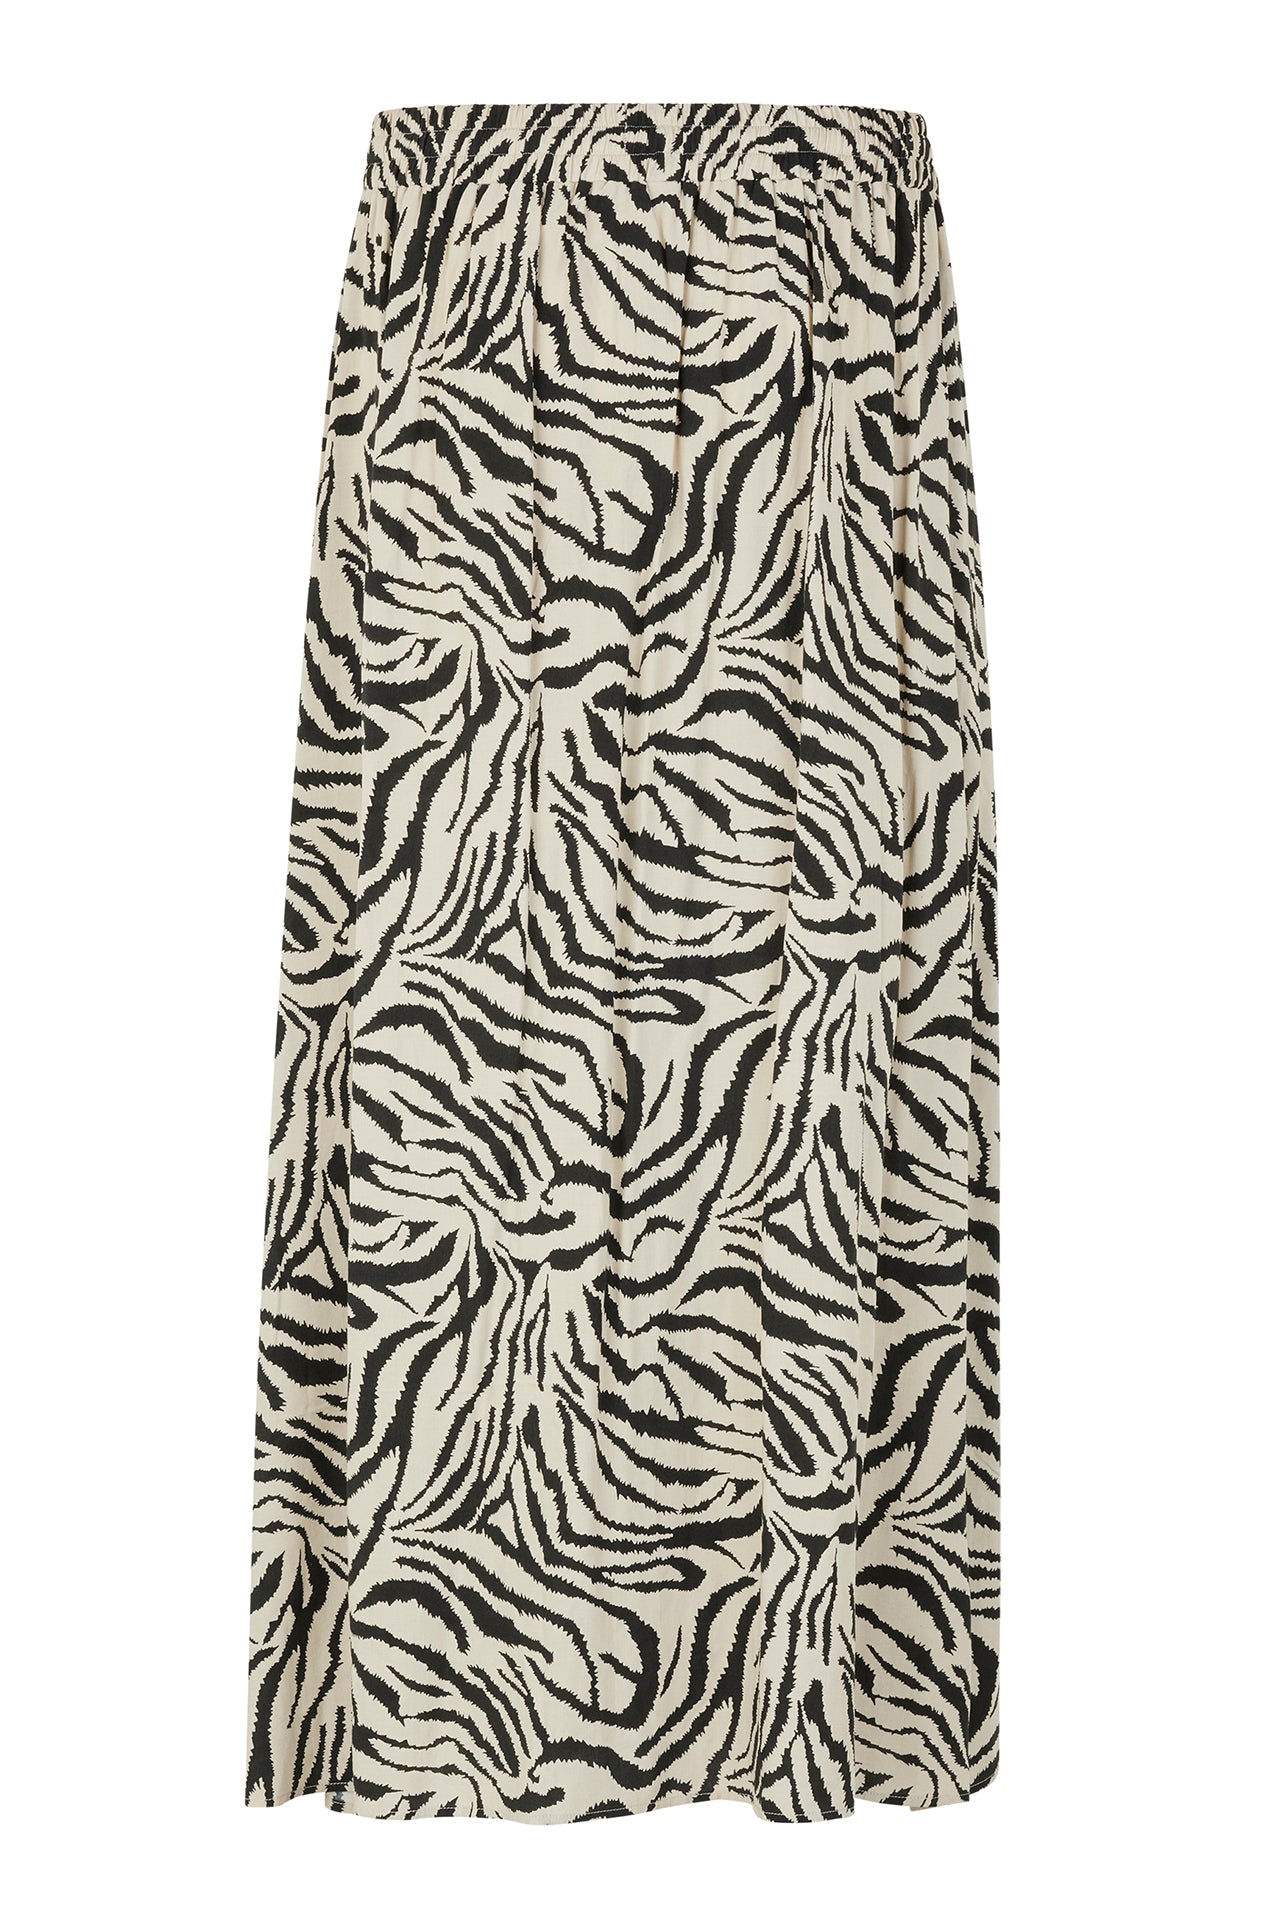 Lollys Laundry AkaneLL Maxi Skirt Skirt 73 Zebra print